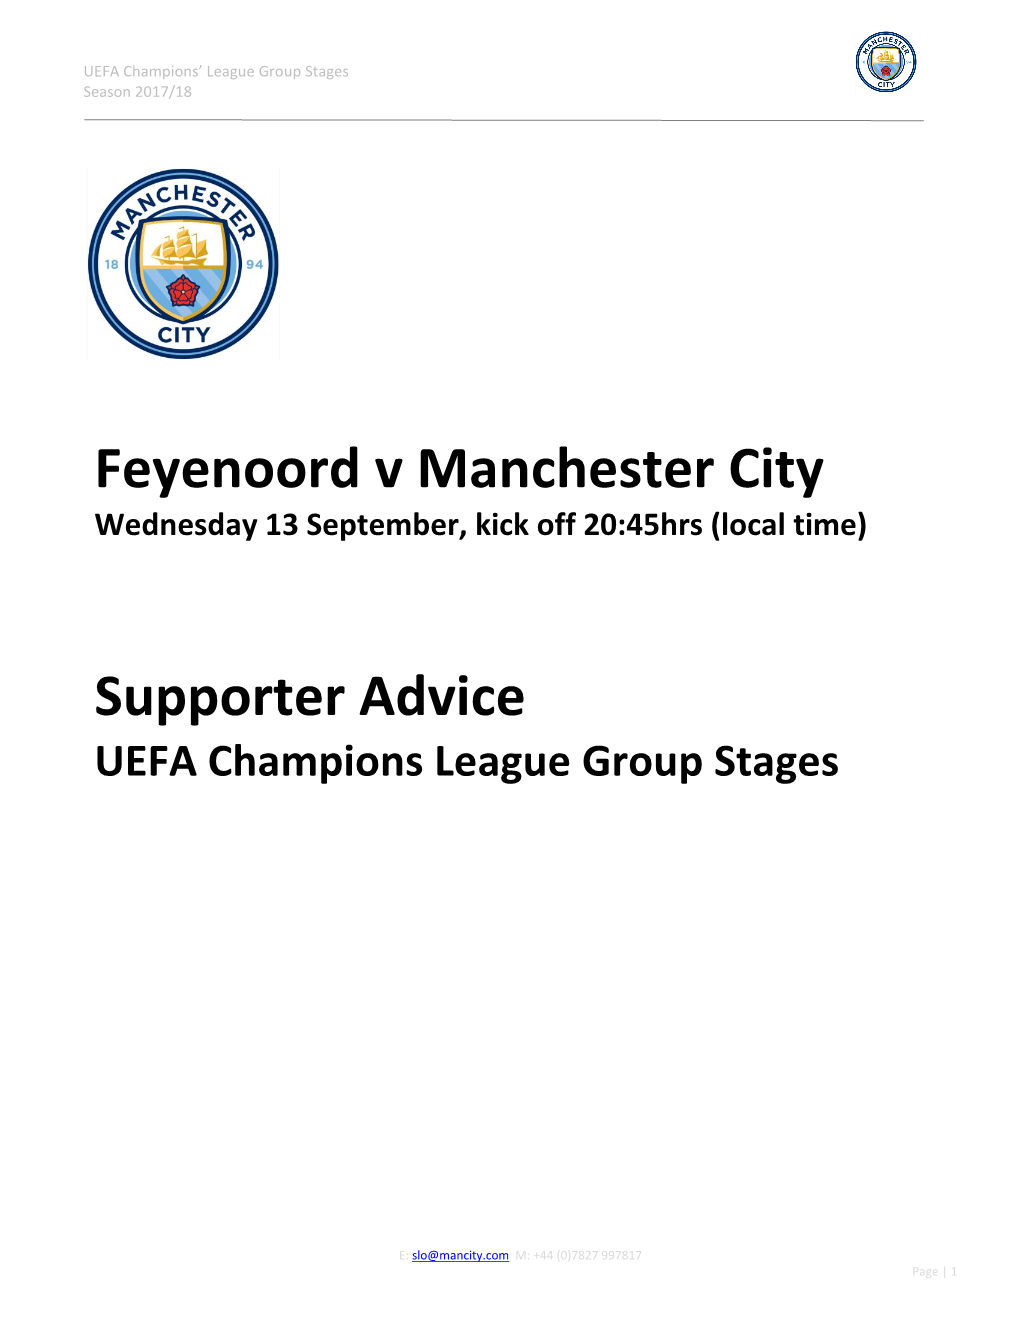 Feyenoord V Manchester City Supporter Advice